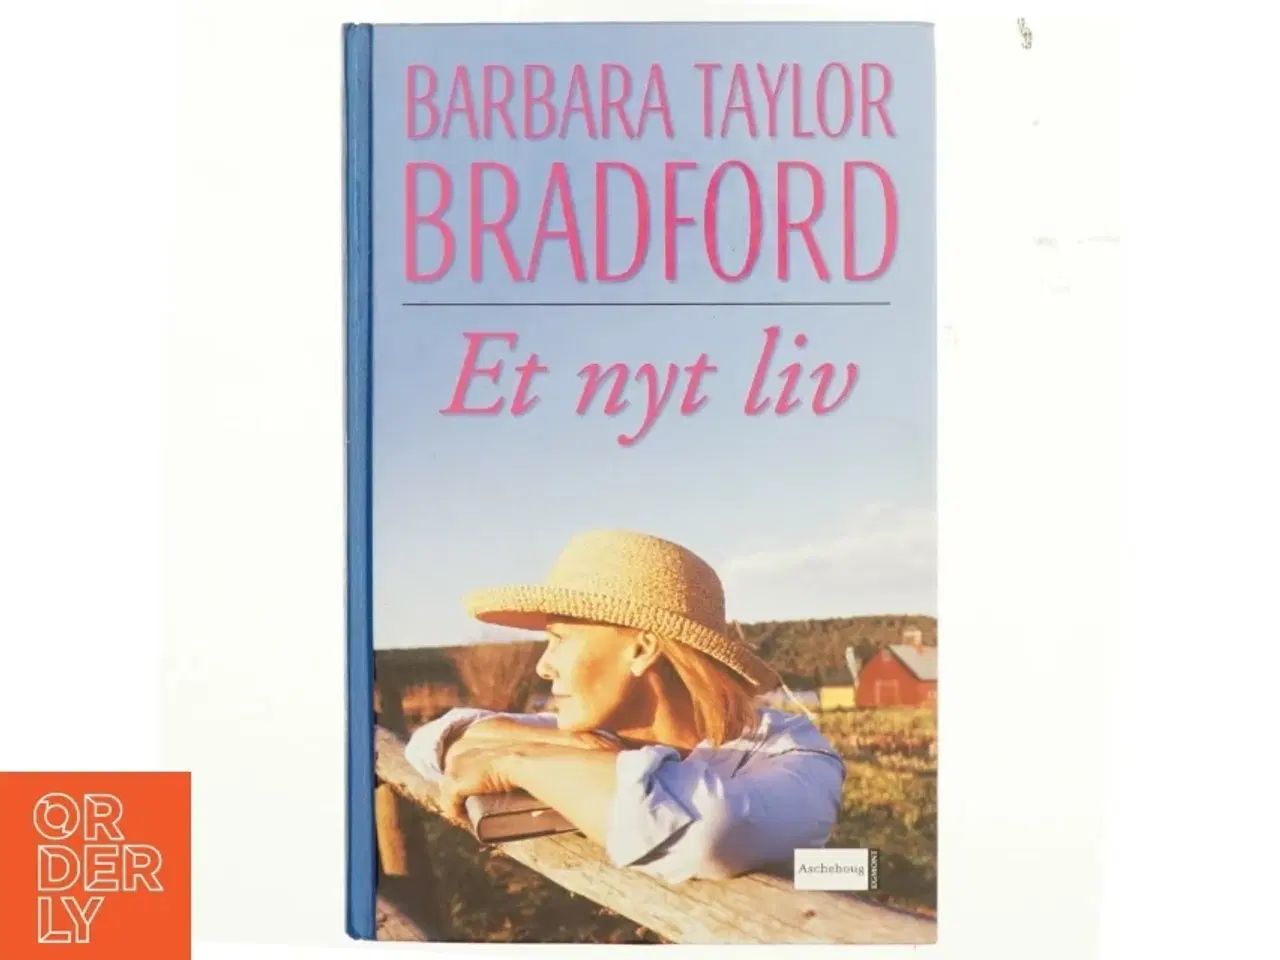 Billede 1 - Barbara Taylor Bradford, et nyt liv